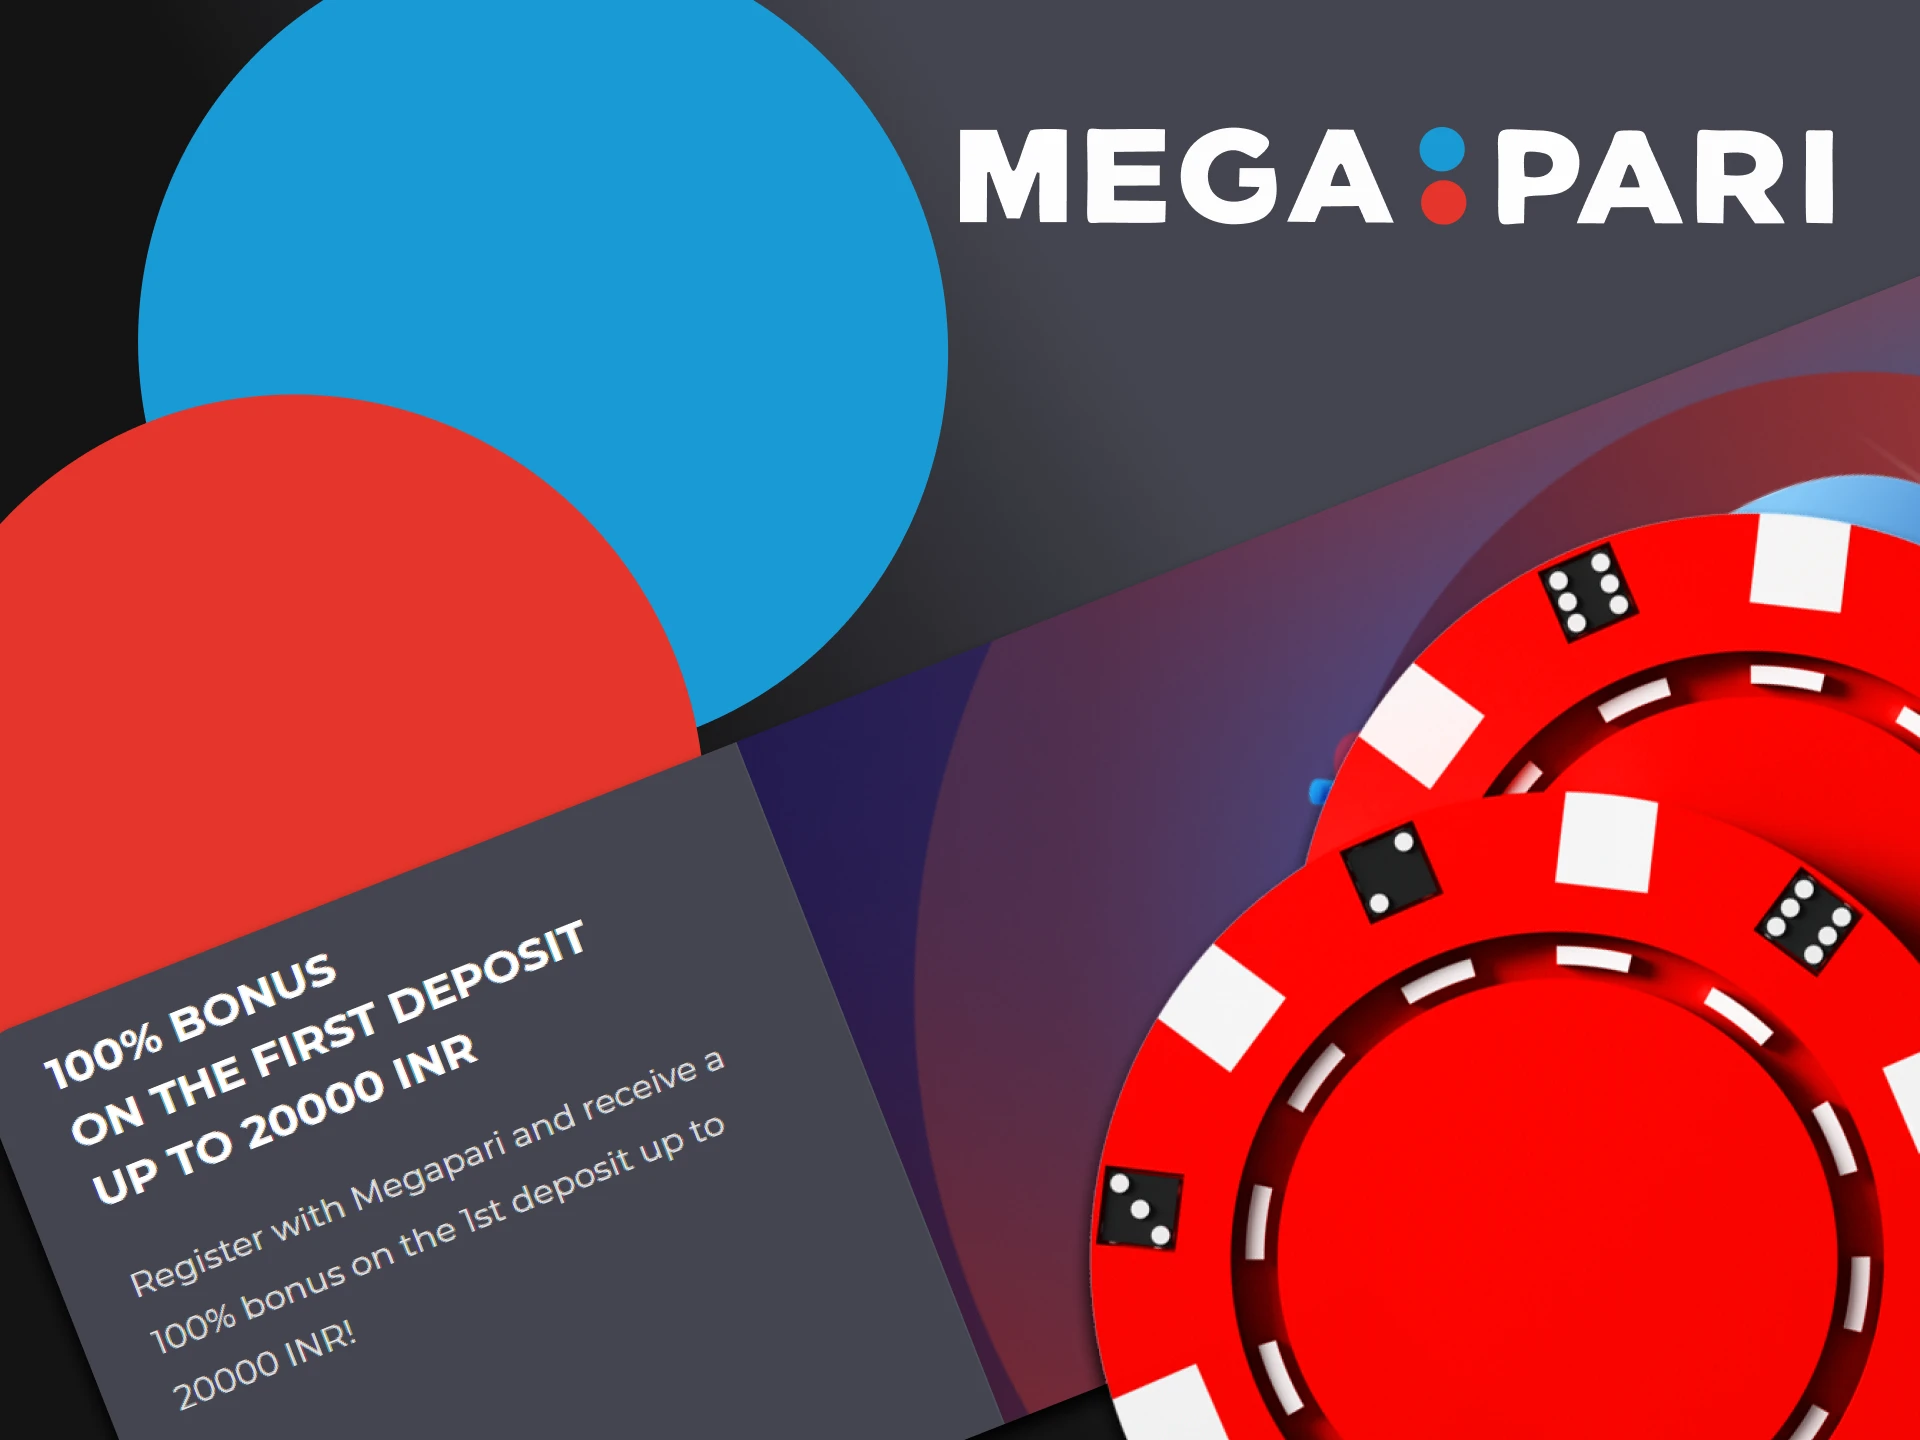 Get casino bonuses from Megapari.